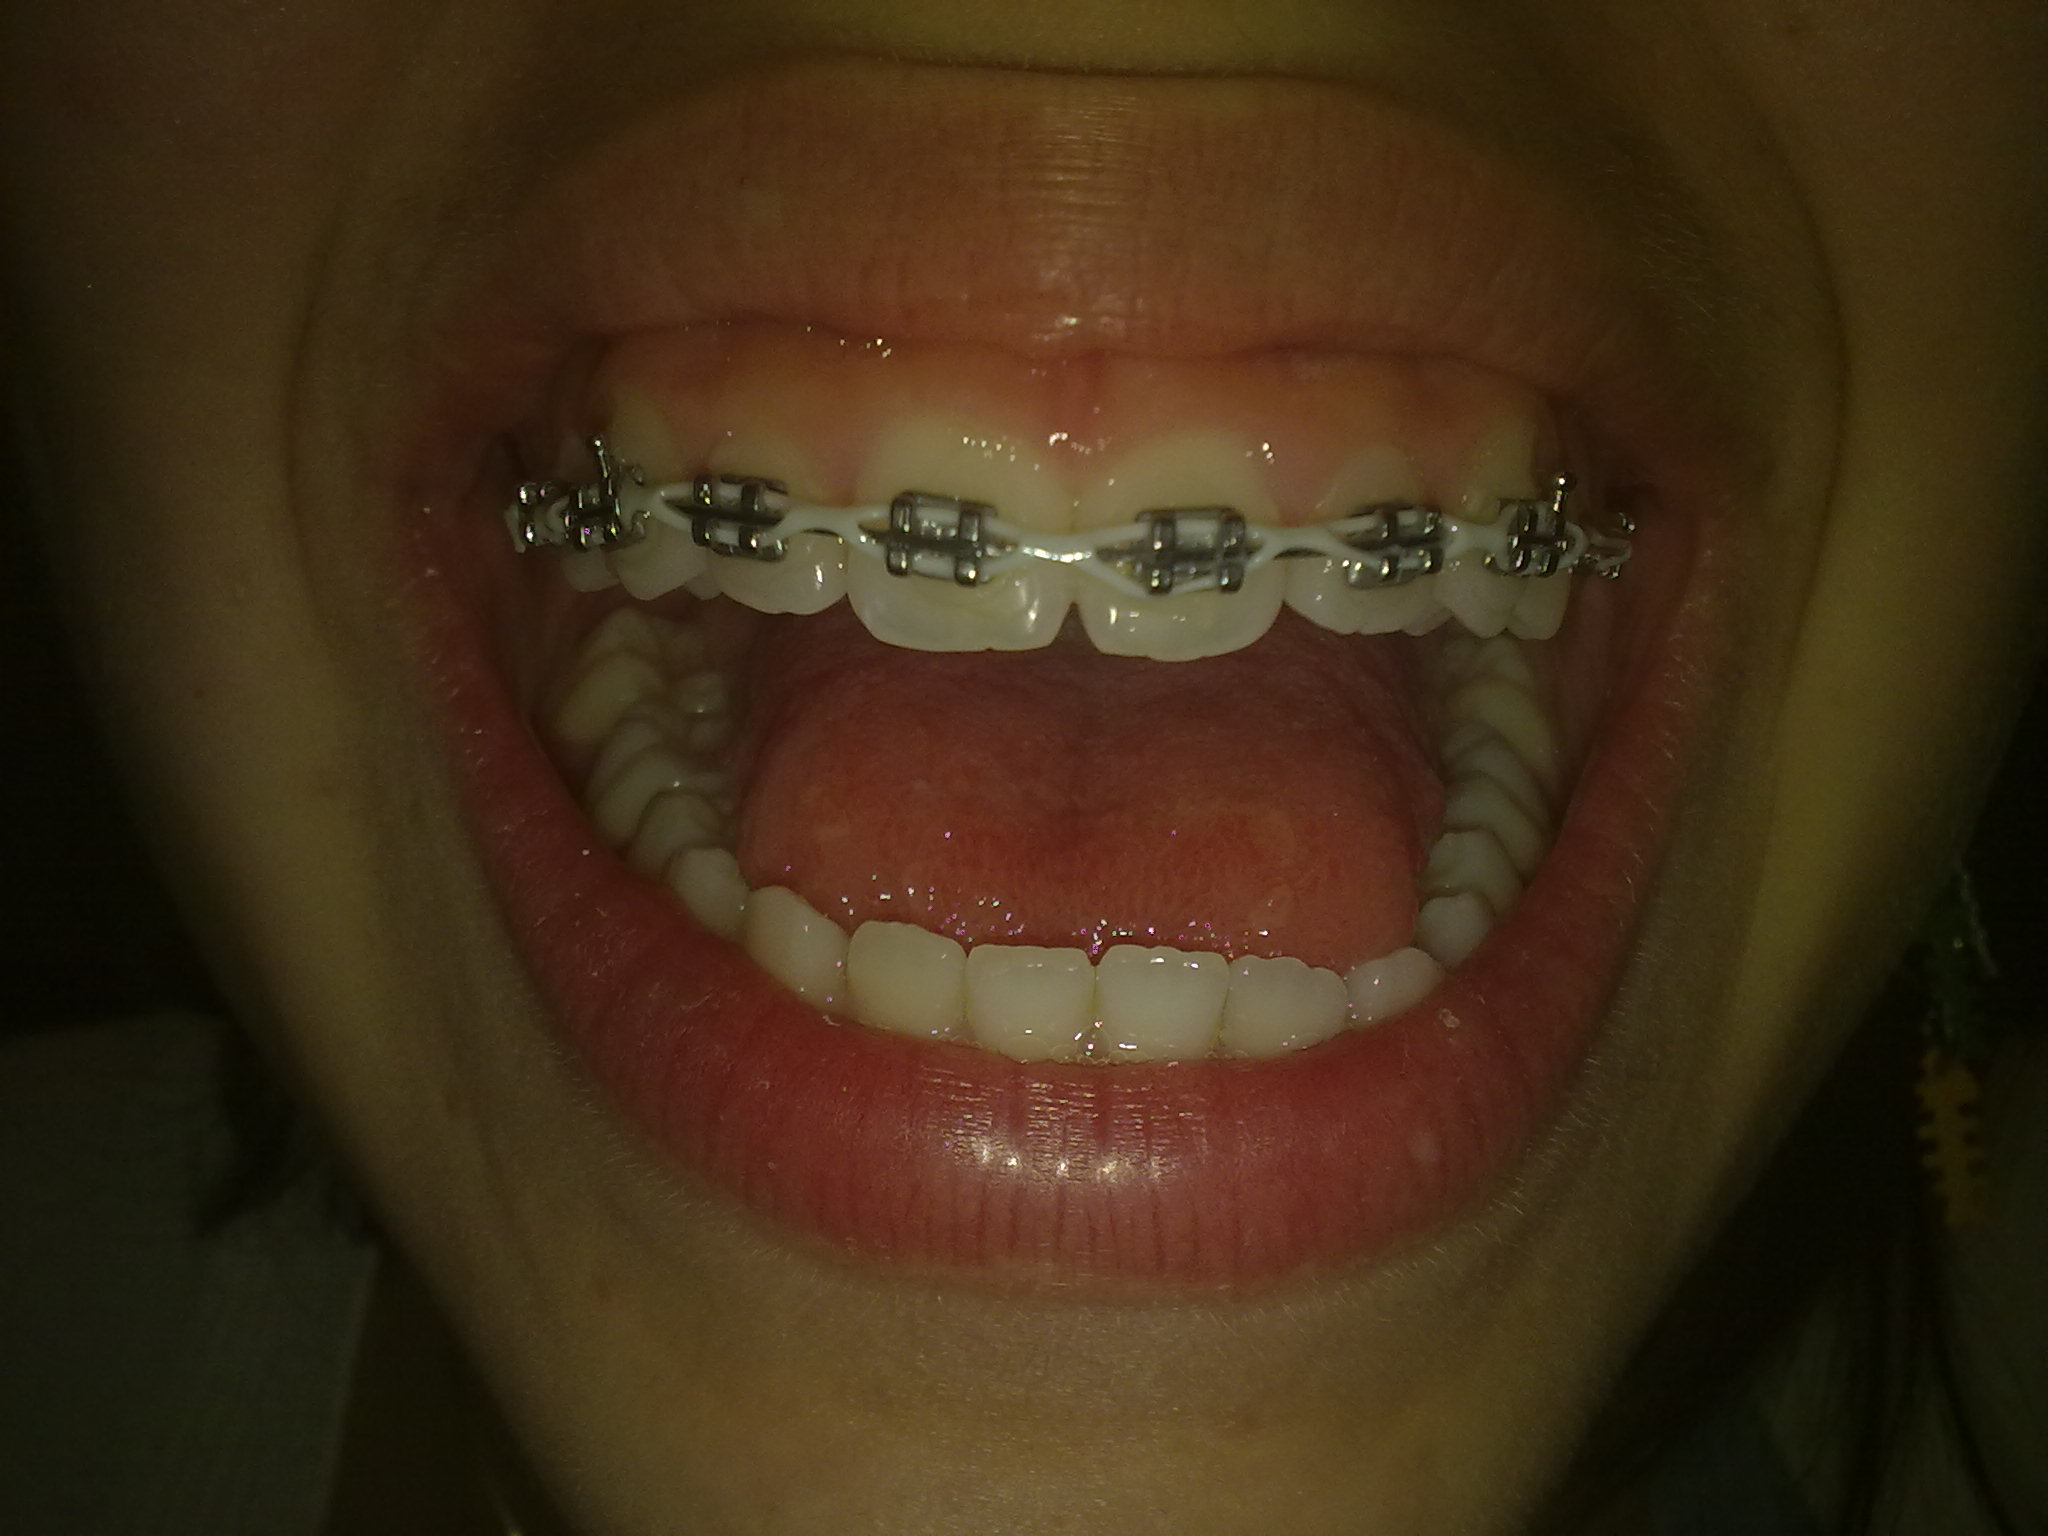 Da circa quattro mesi ho messo l'apparecchio fisso all'arcata superiore dei denti per un problema estetico.